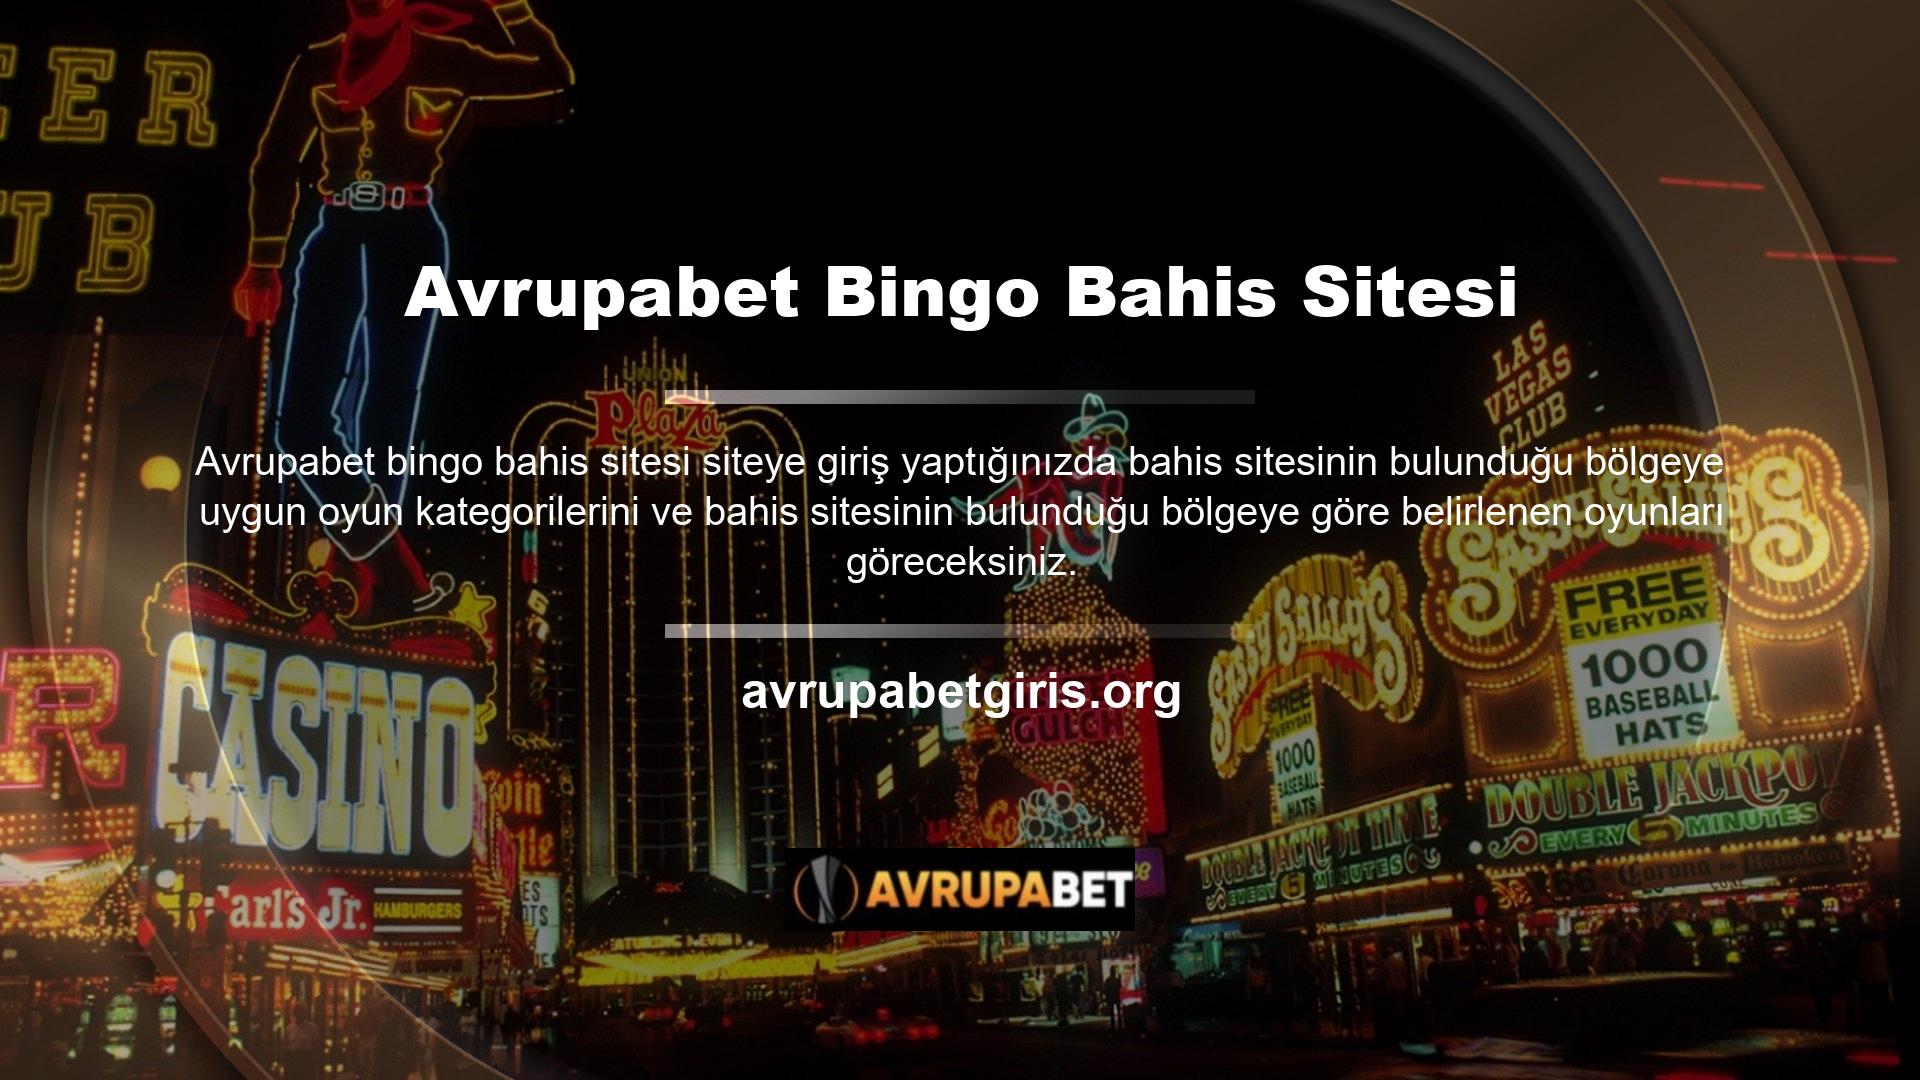 Alternatif bingo bahis siteleri casino dünyasında iyi bilinmektedir